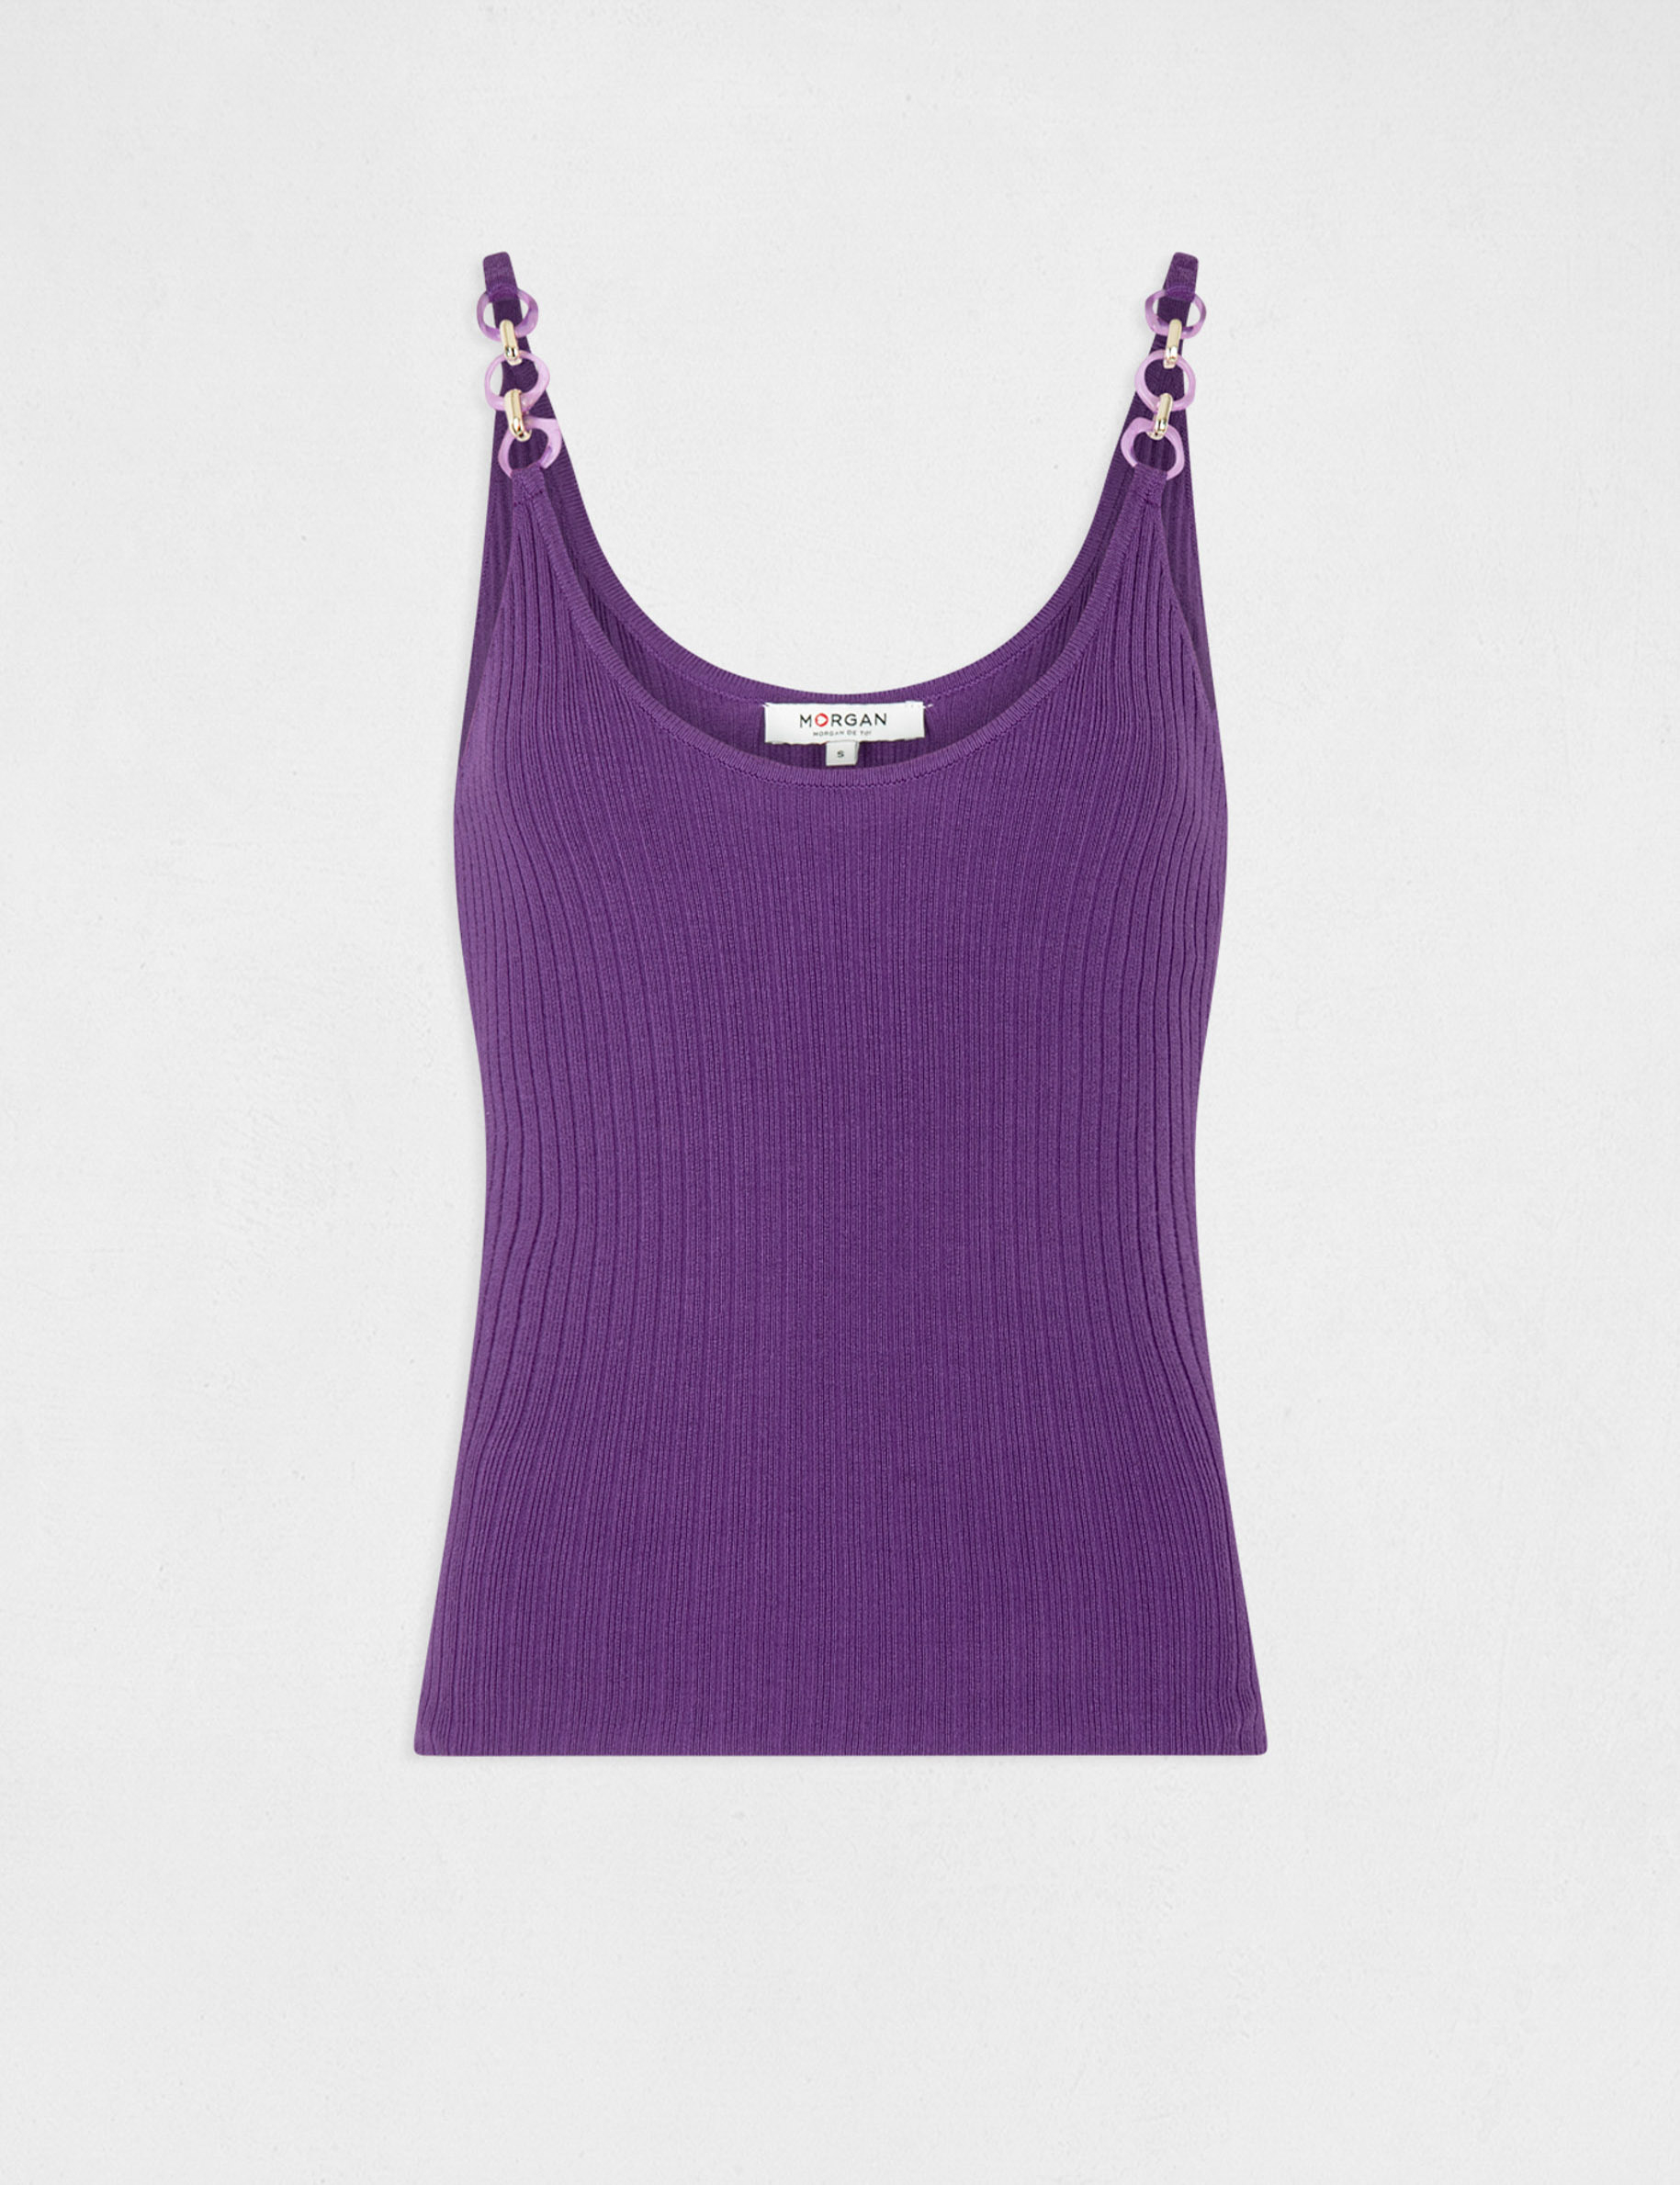 Jumper vest top with chain details dark purple ladies'